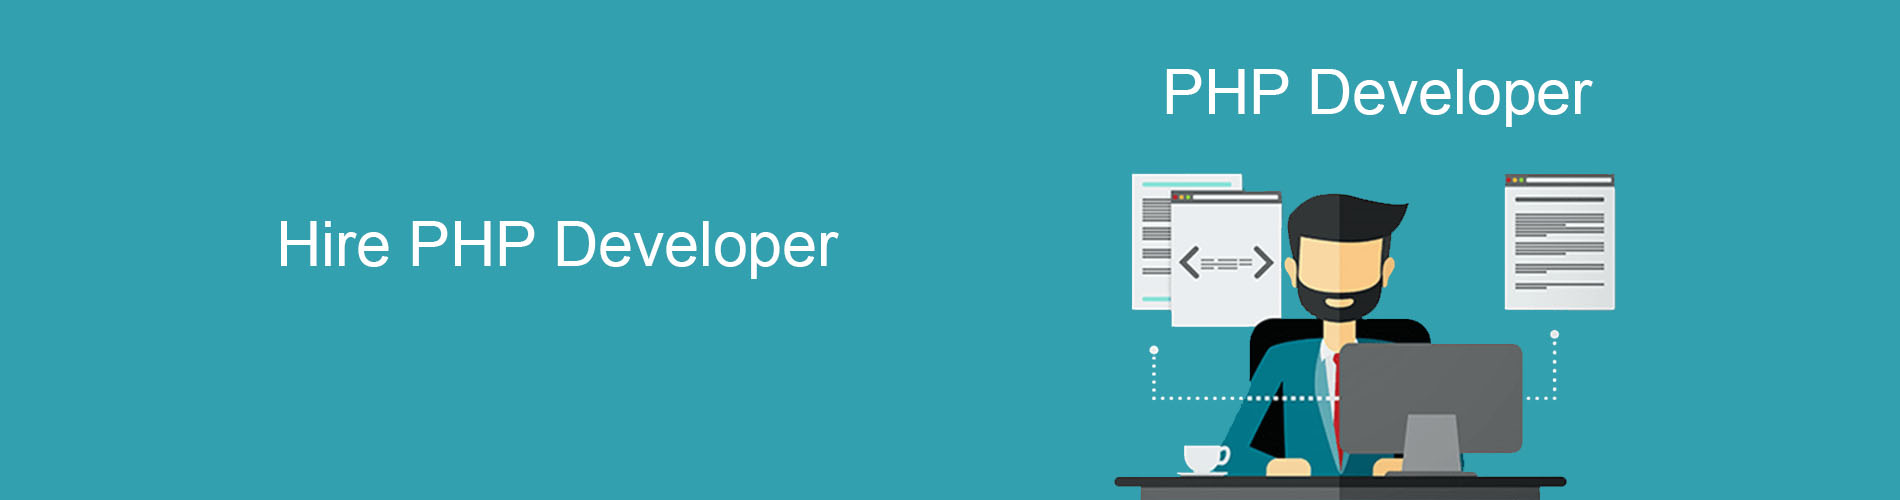 hire-php-website-developer